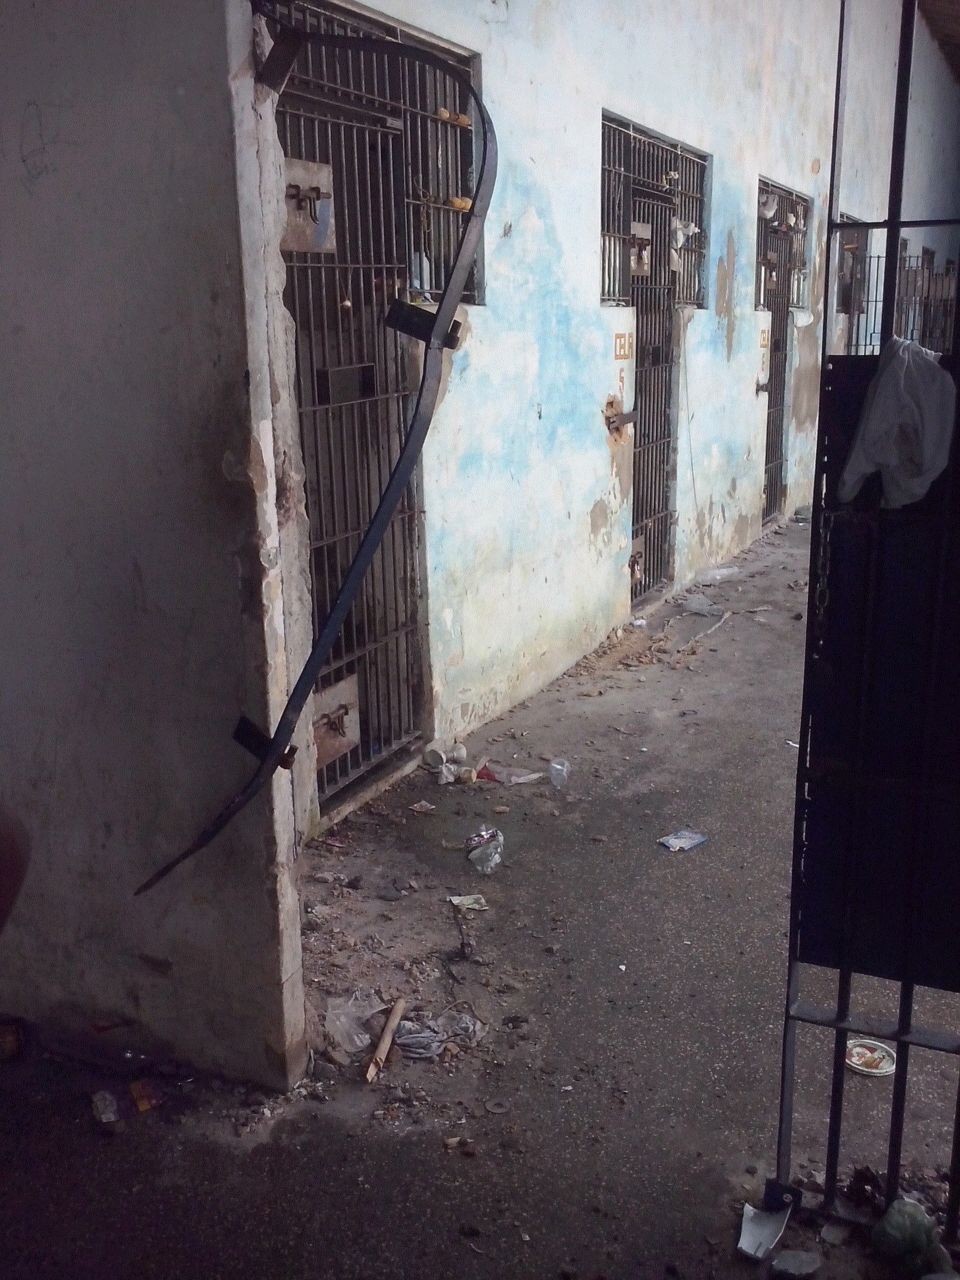 Celas e grades foram destruídas pelos presos (Foto: Divulgação/Sinpoljuspi)